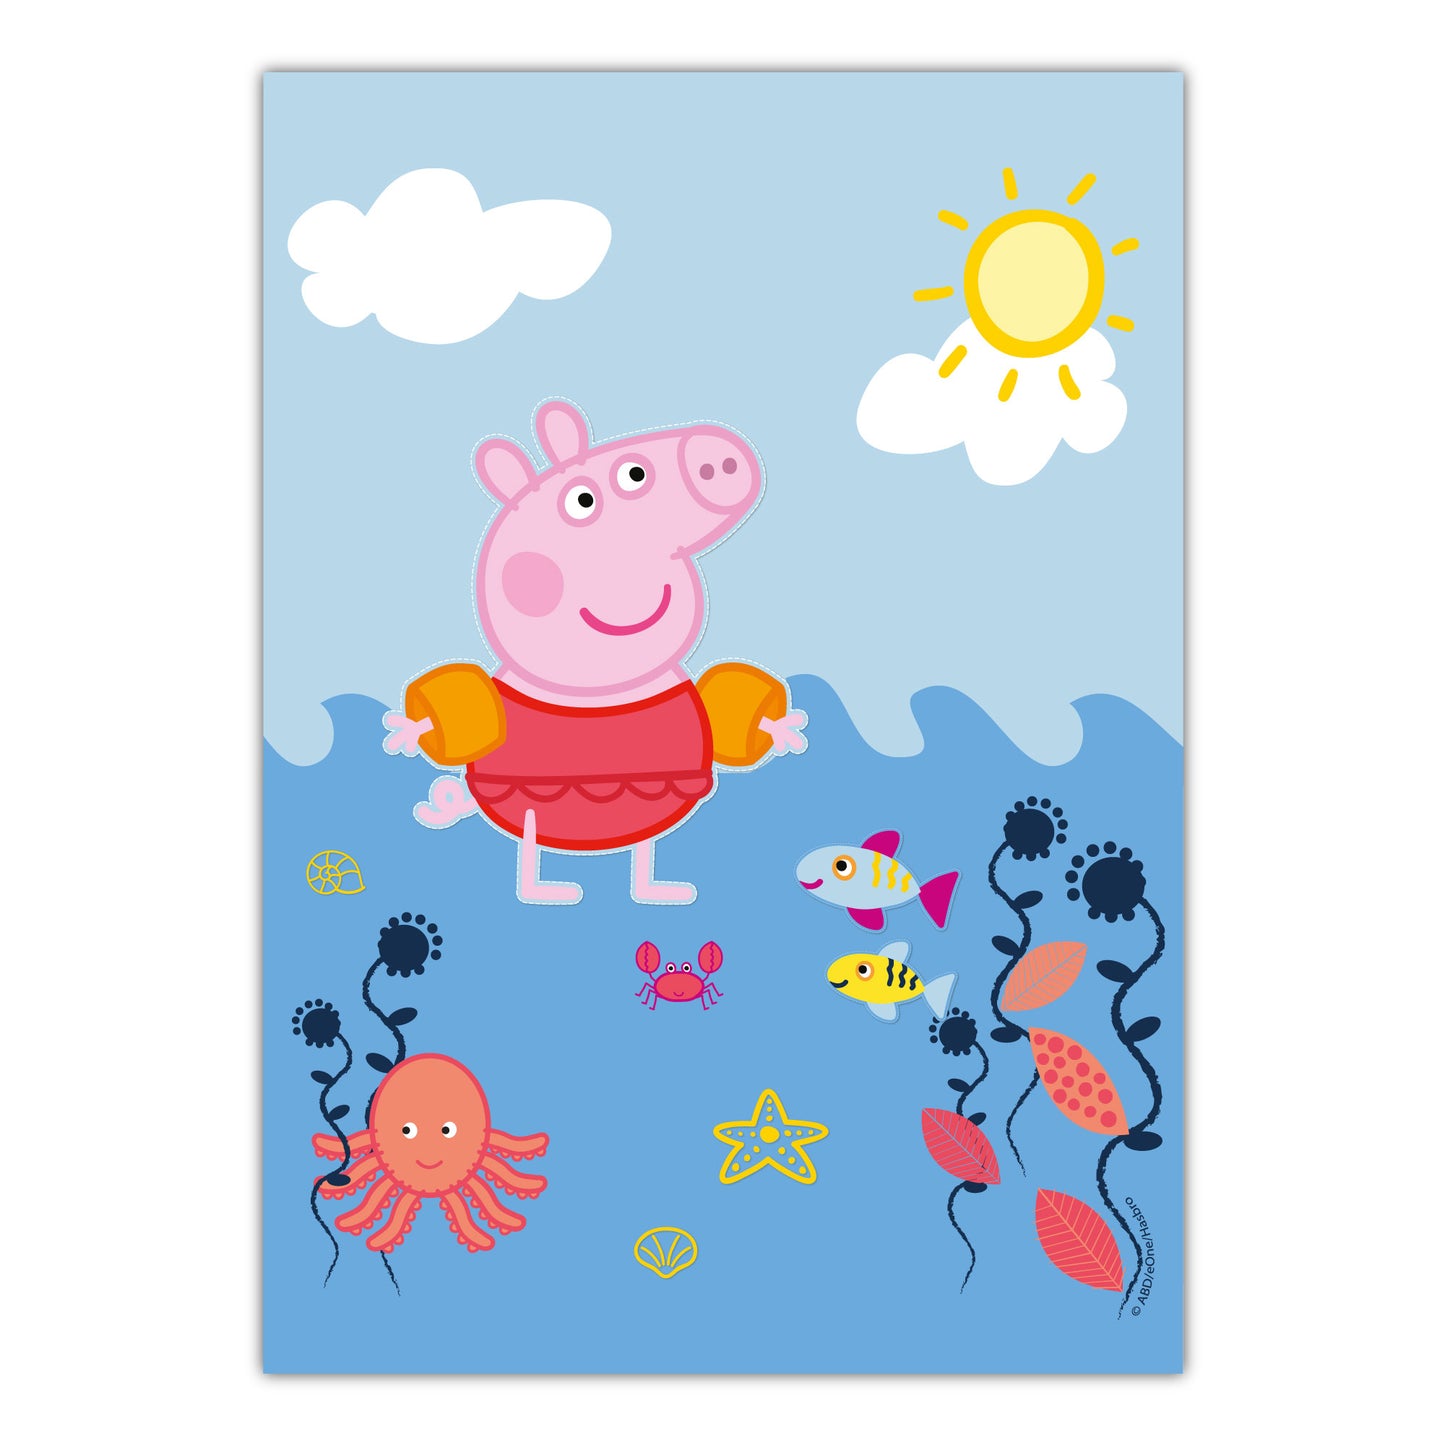 Peppa Pig Print - Peppa Ocean Swimming Poster Wall Art